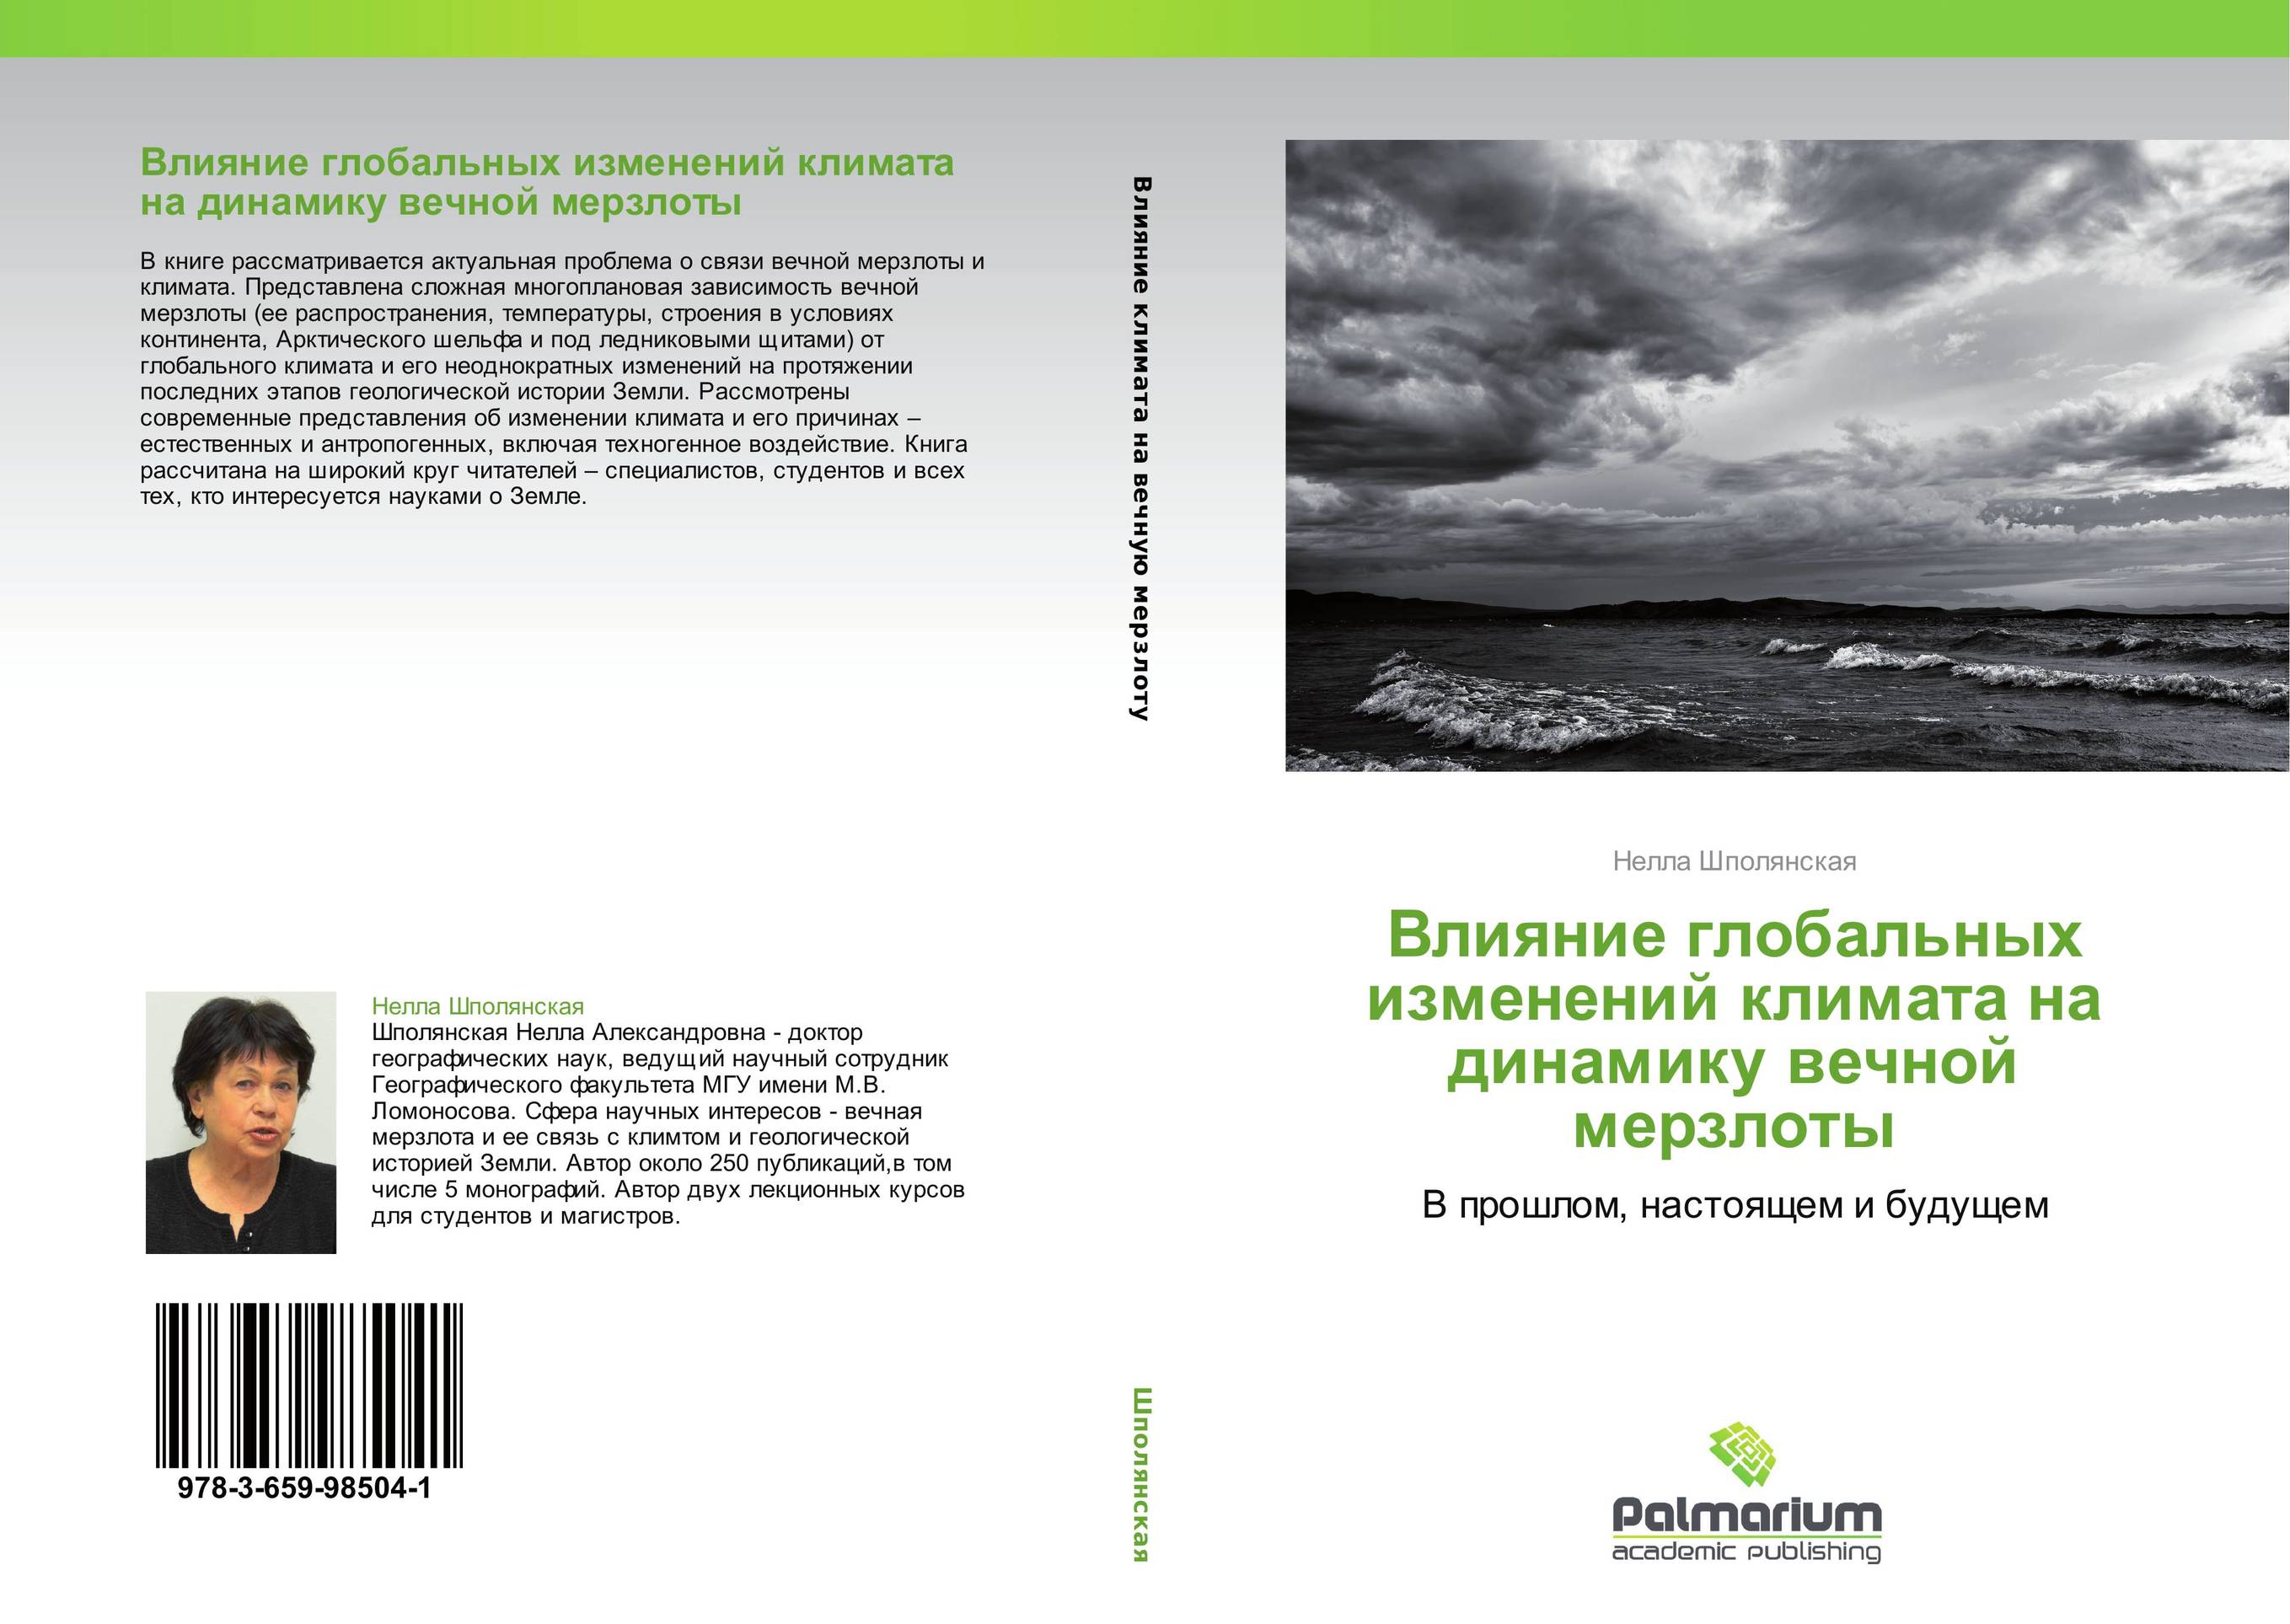 Влияние глобальных изменений на россию. Книги о изменении климата.